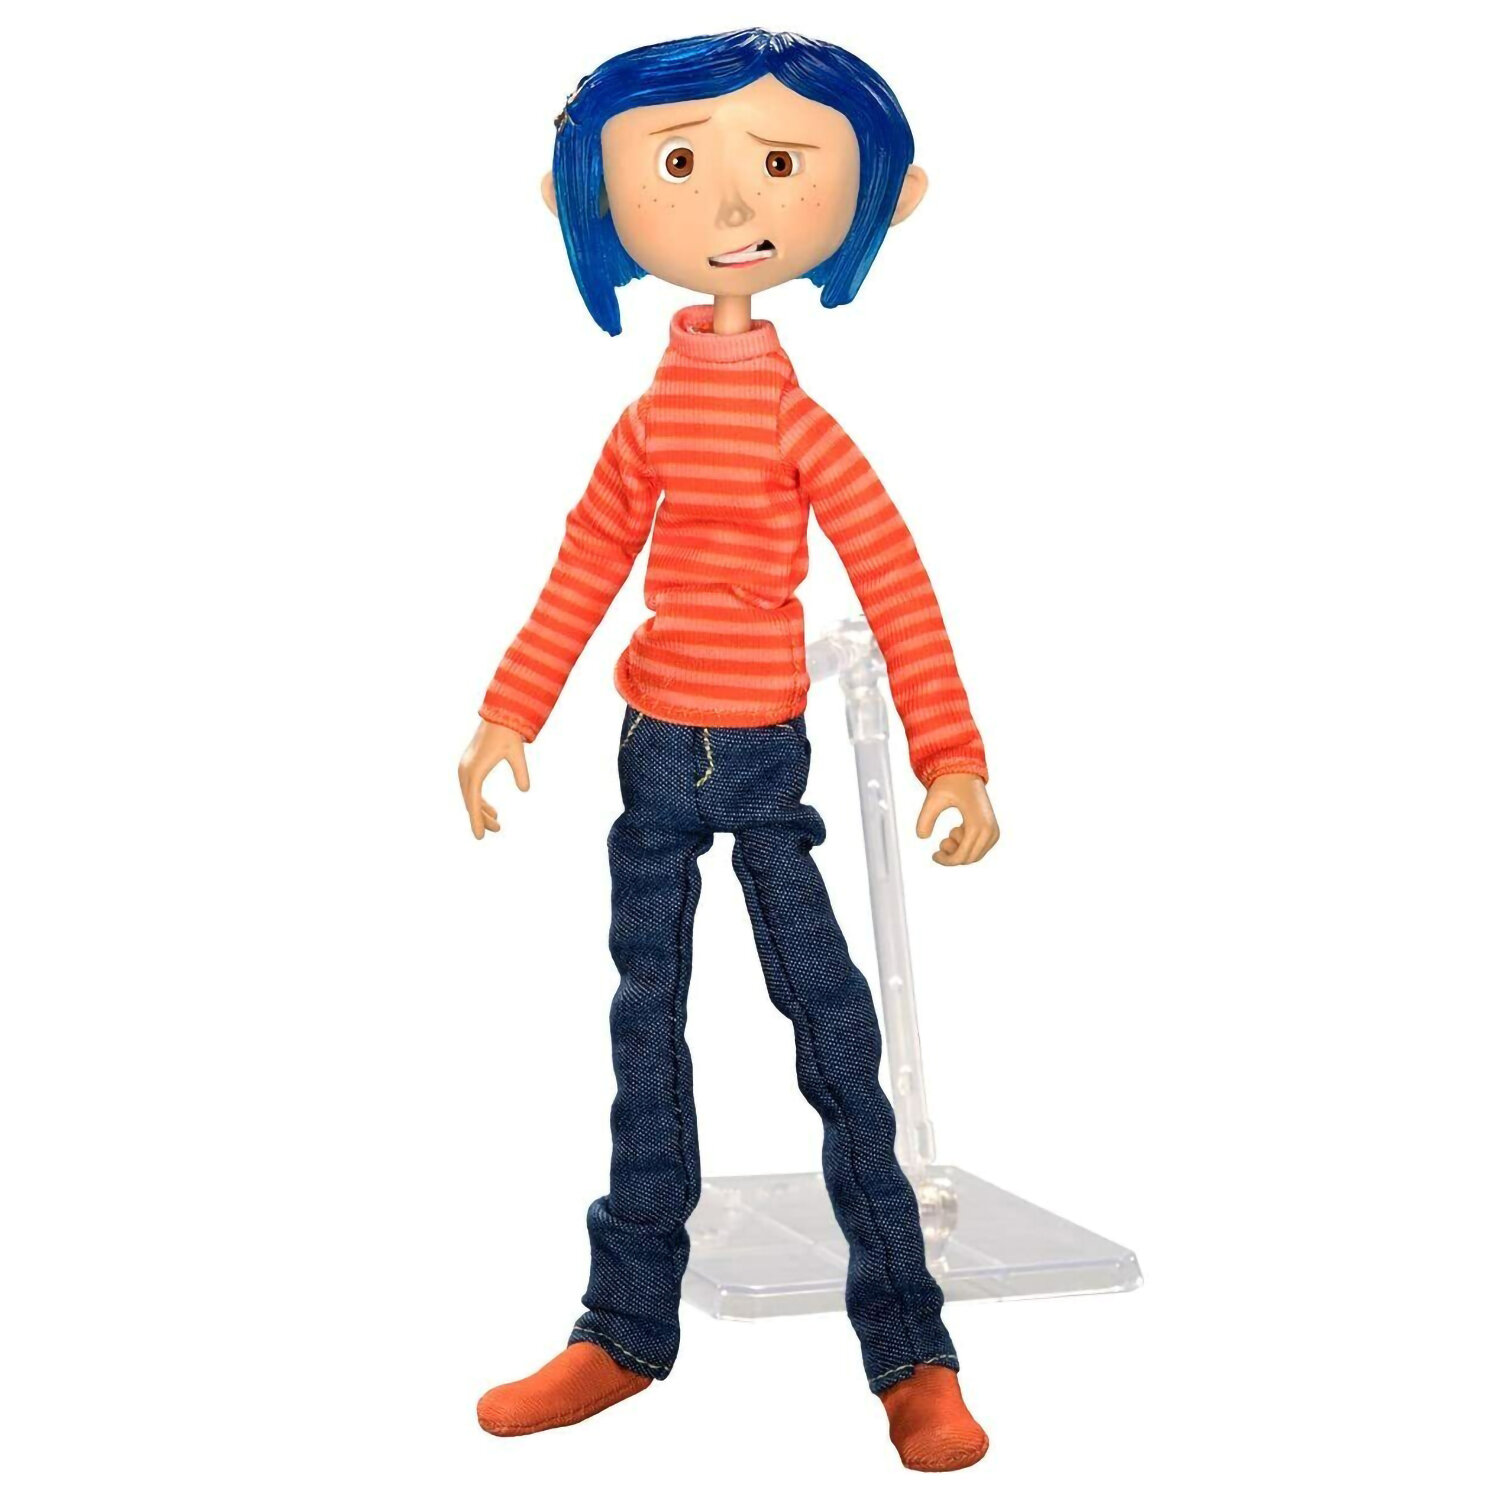 Фигурка Coraline in Striped Shirt and Jeans 634482495698